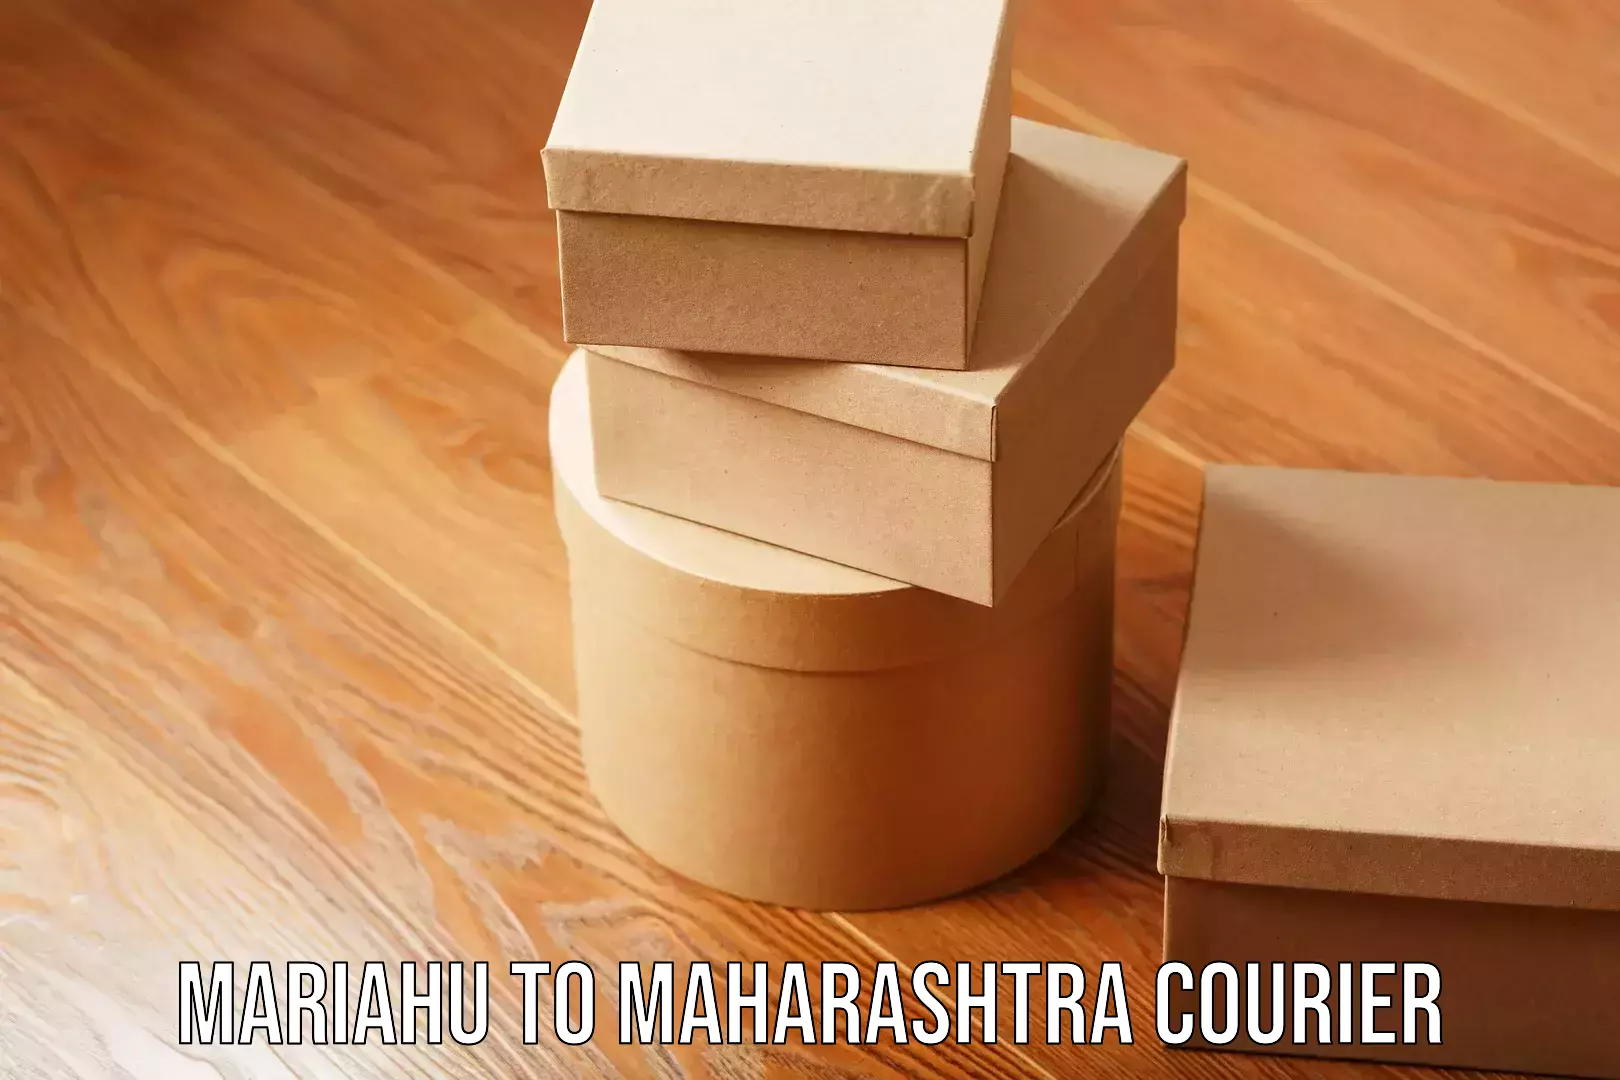 Reliable household moving Mariahu to Maharashtra